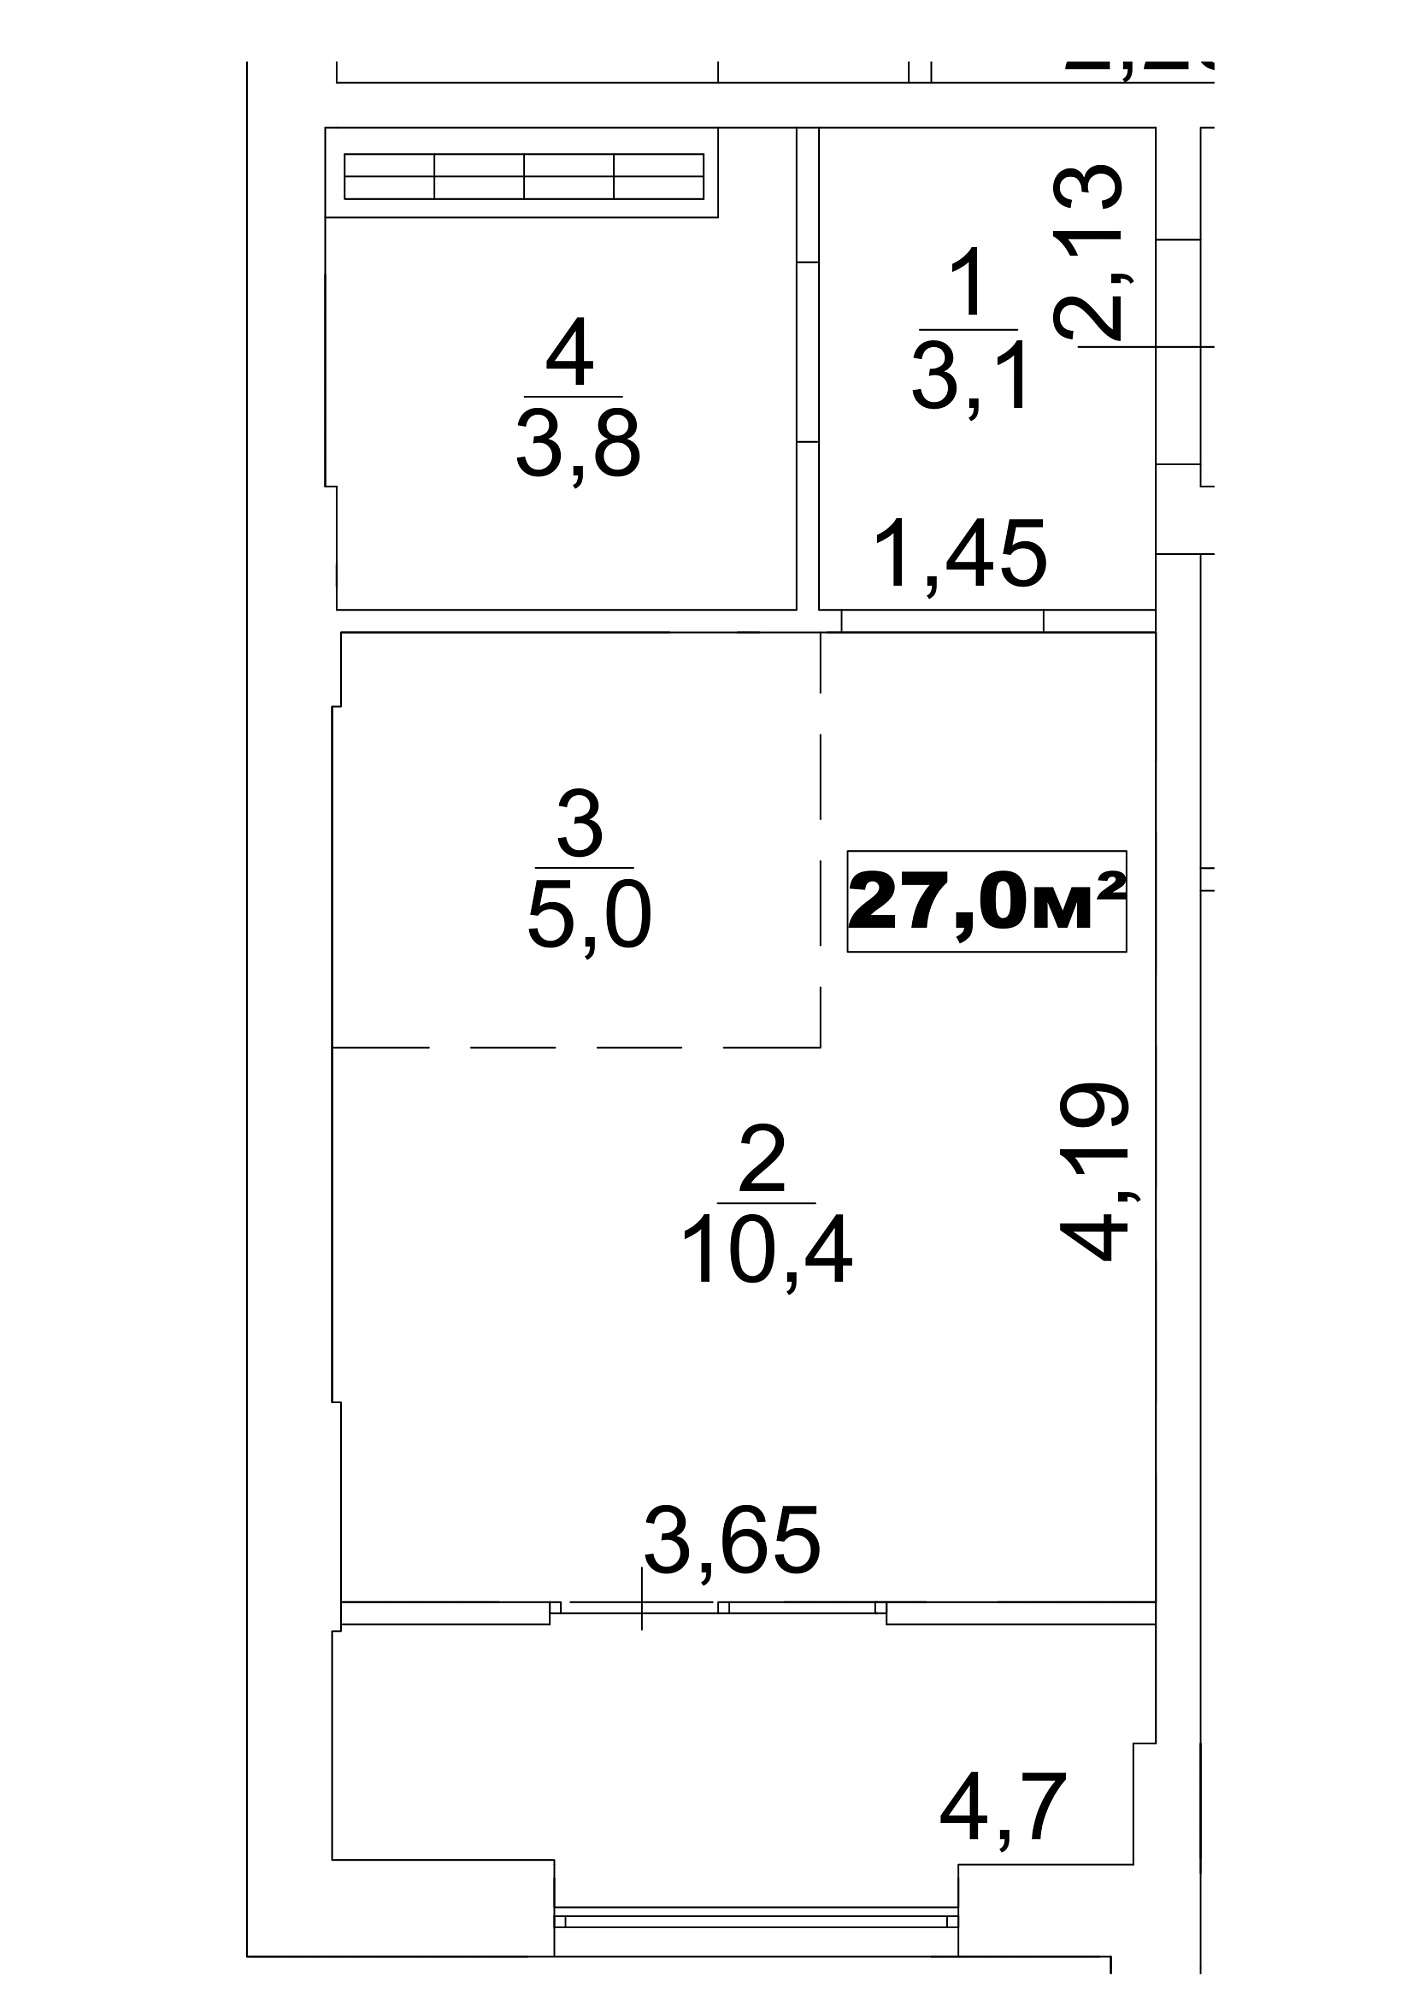 Планування Smart-квартира площею 27м2, AB-13-09/0072а.